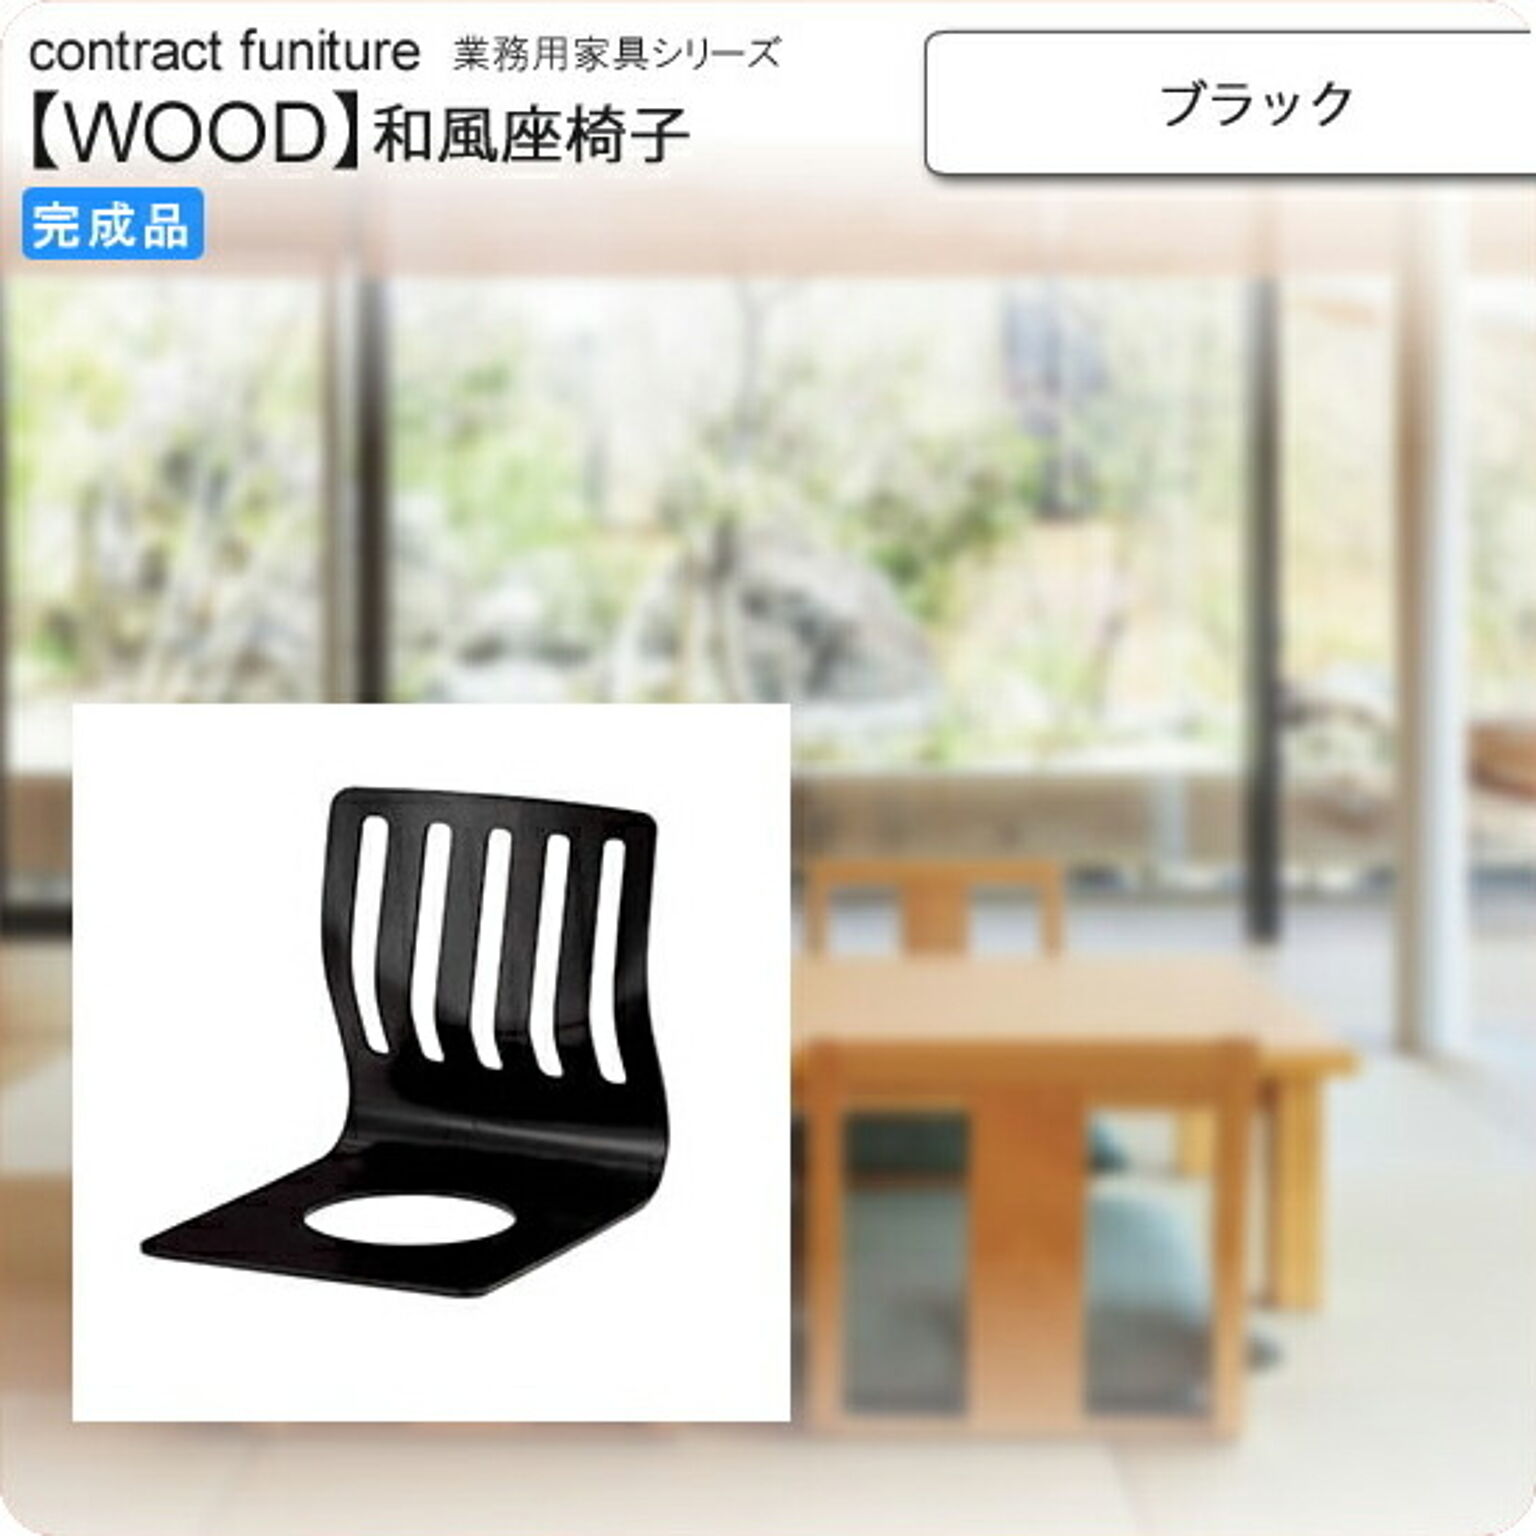 座椅子 ブラック 座椅子 業務用家具：wood japaneseシリーズ★ ノーク ブラック(black) (和風)